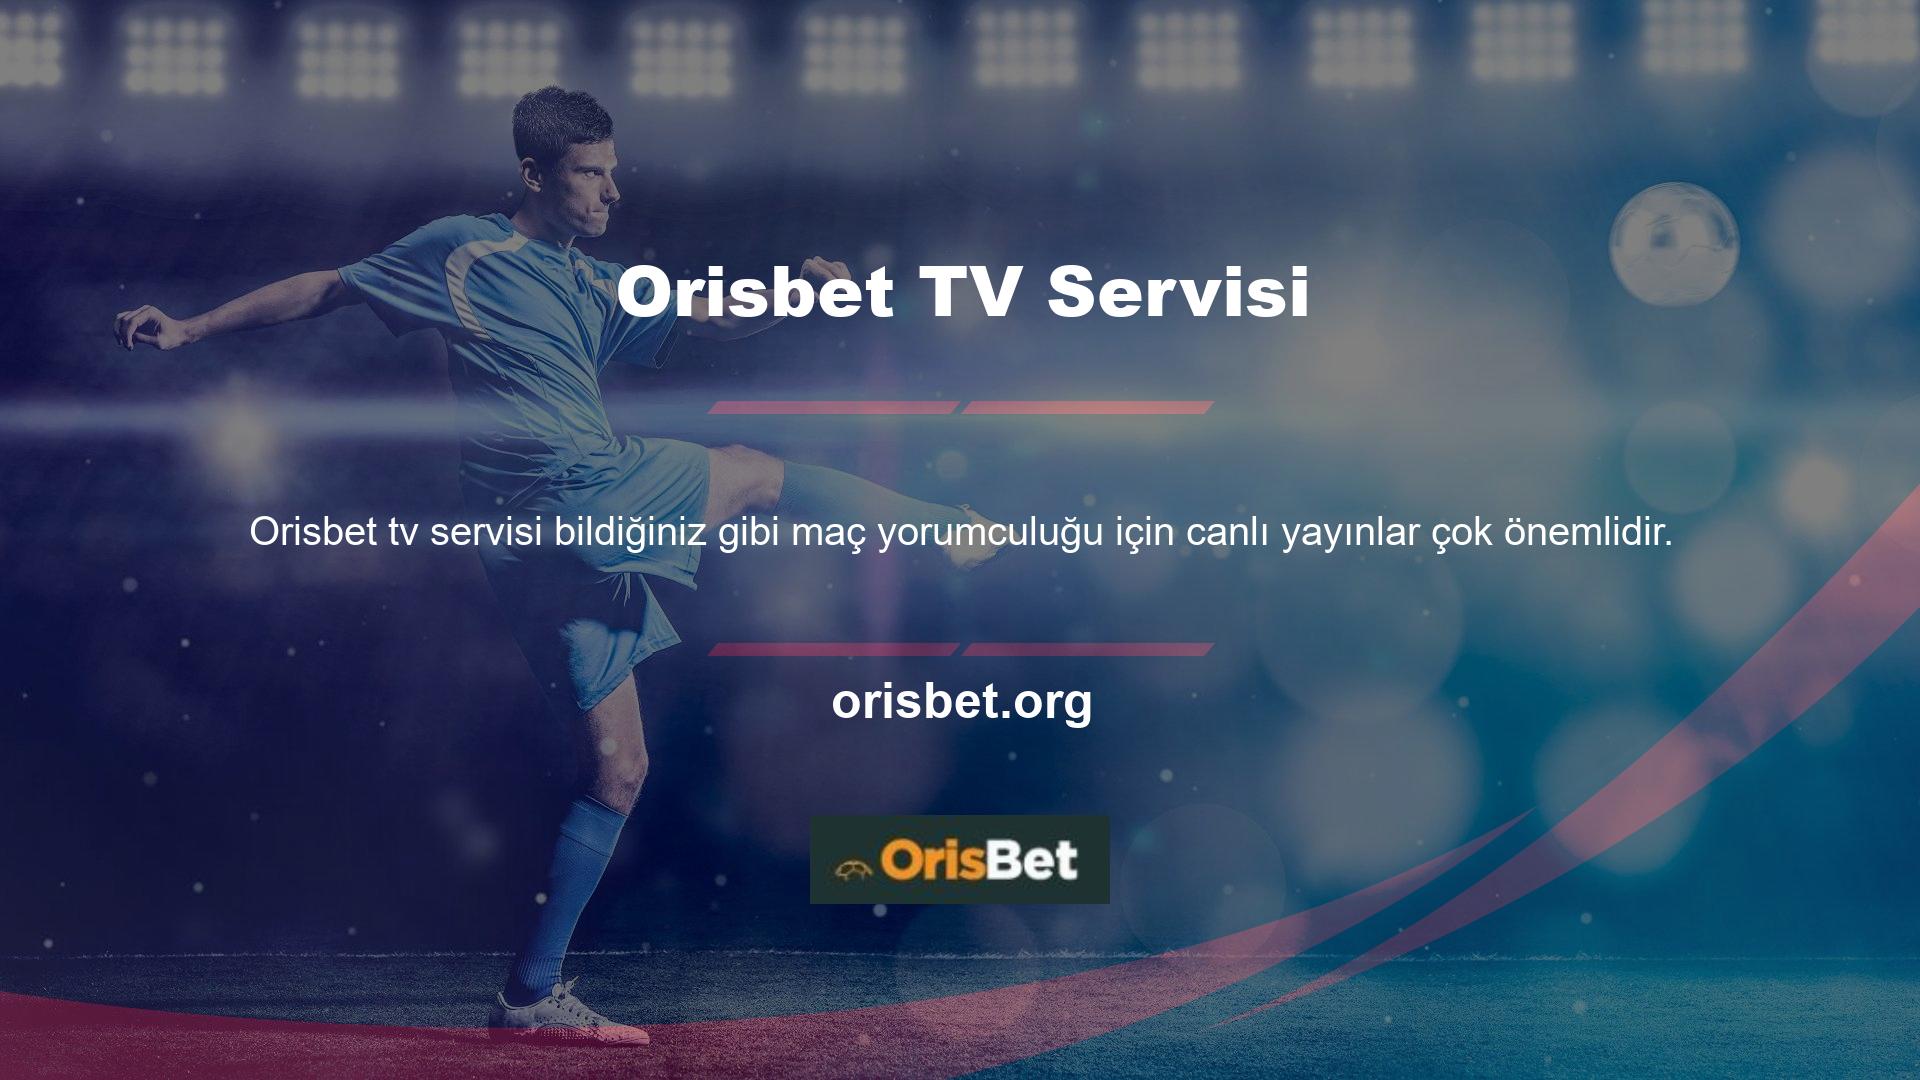 Bu nedenle Orisbet TV hizmeti, spor bahisleri söz konusu olduğunda çok iyi bir ortaktır